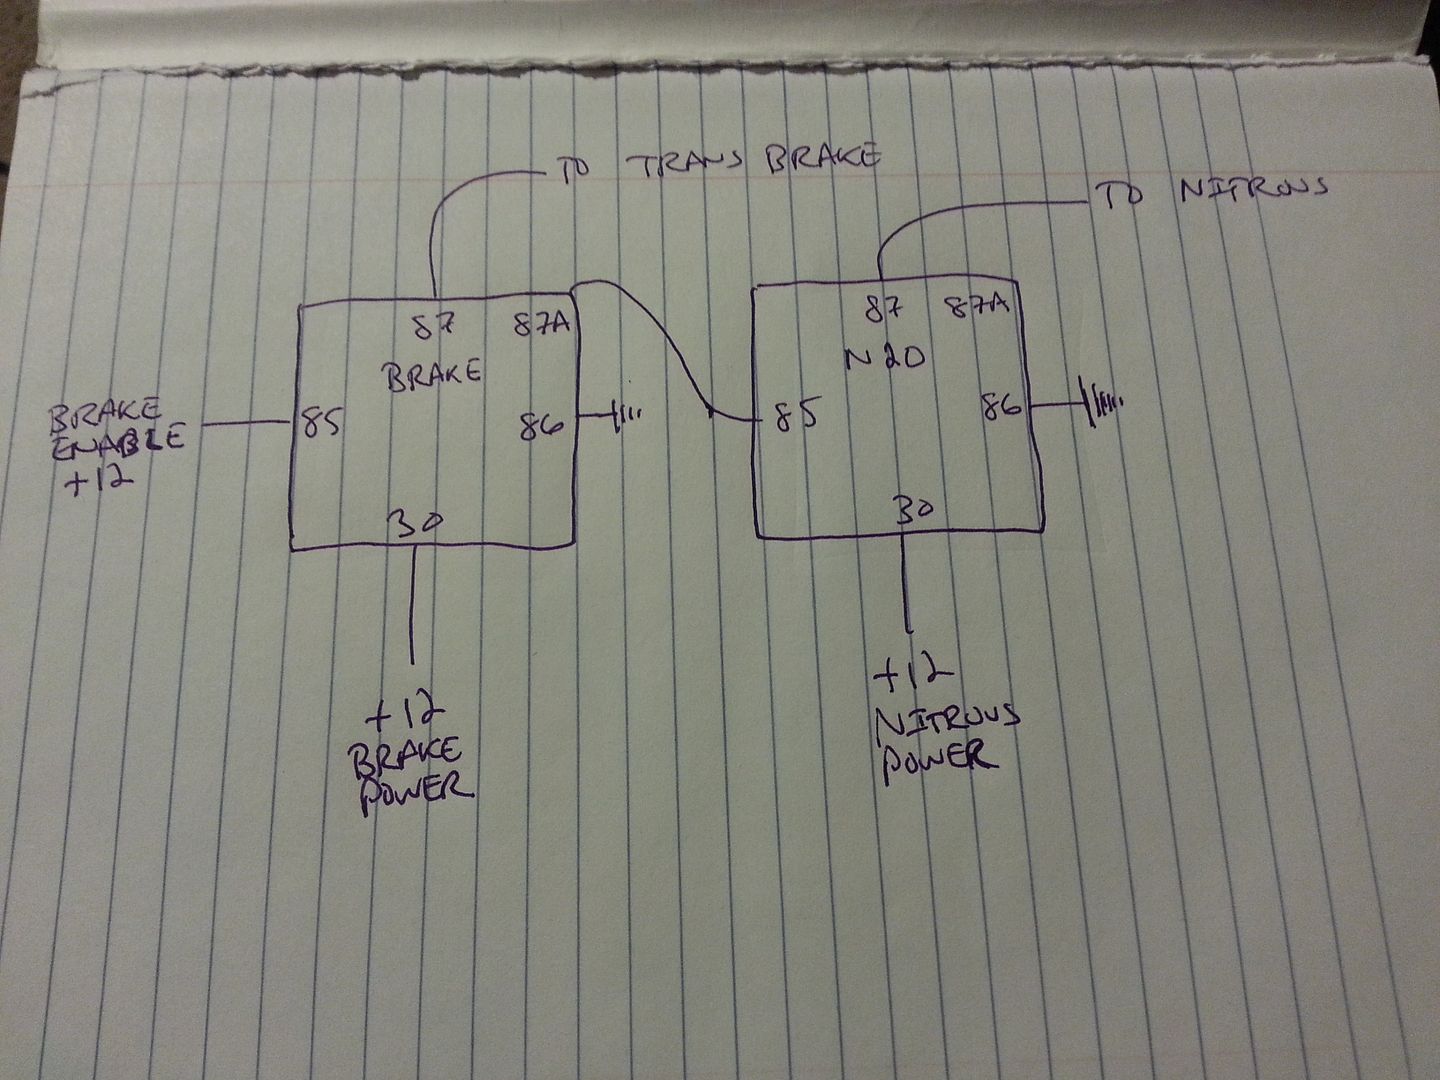 nitrous and transbrake wiring diagram